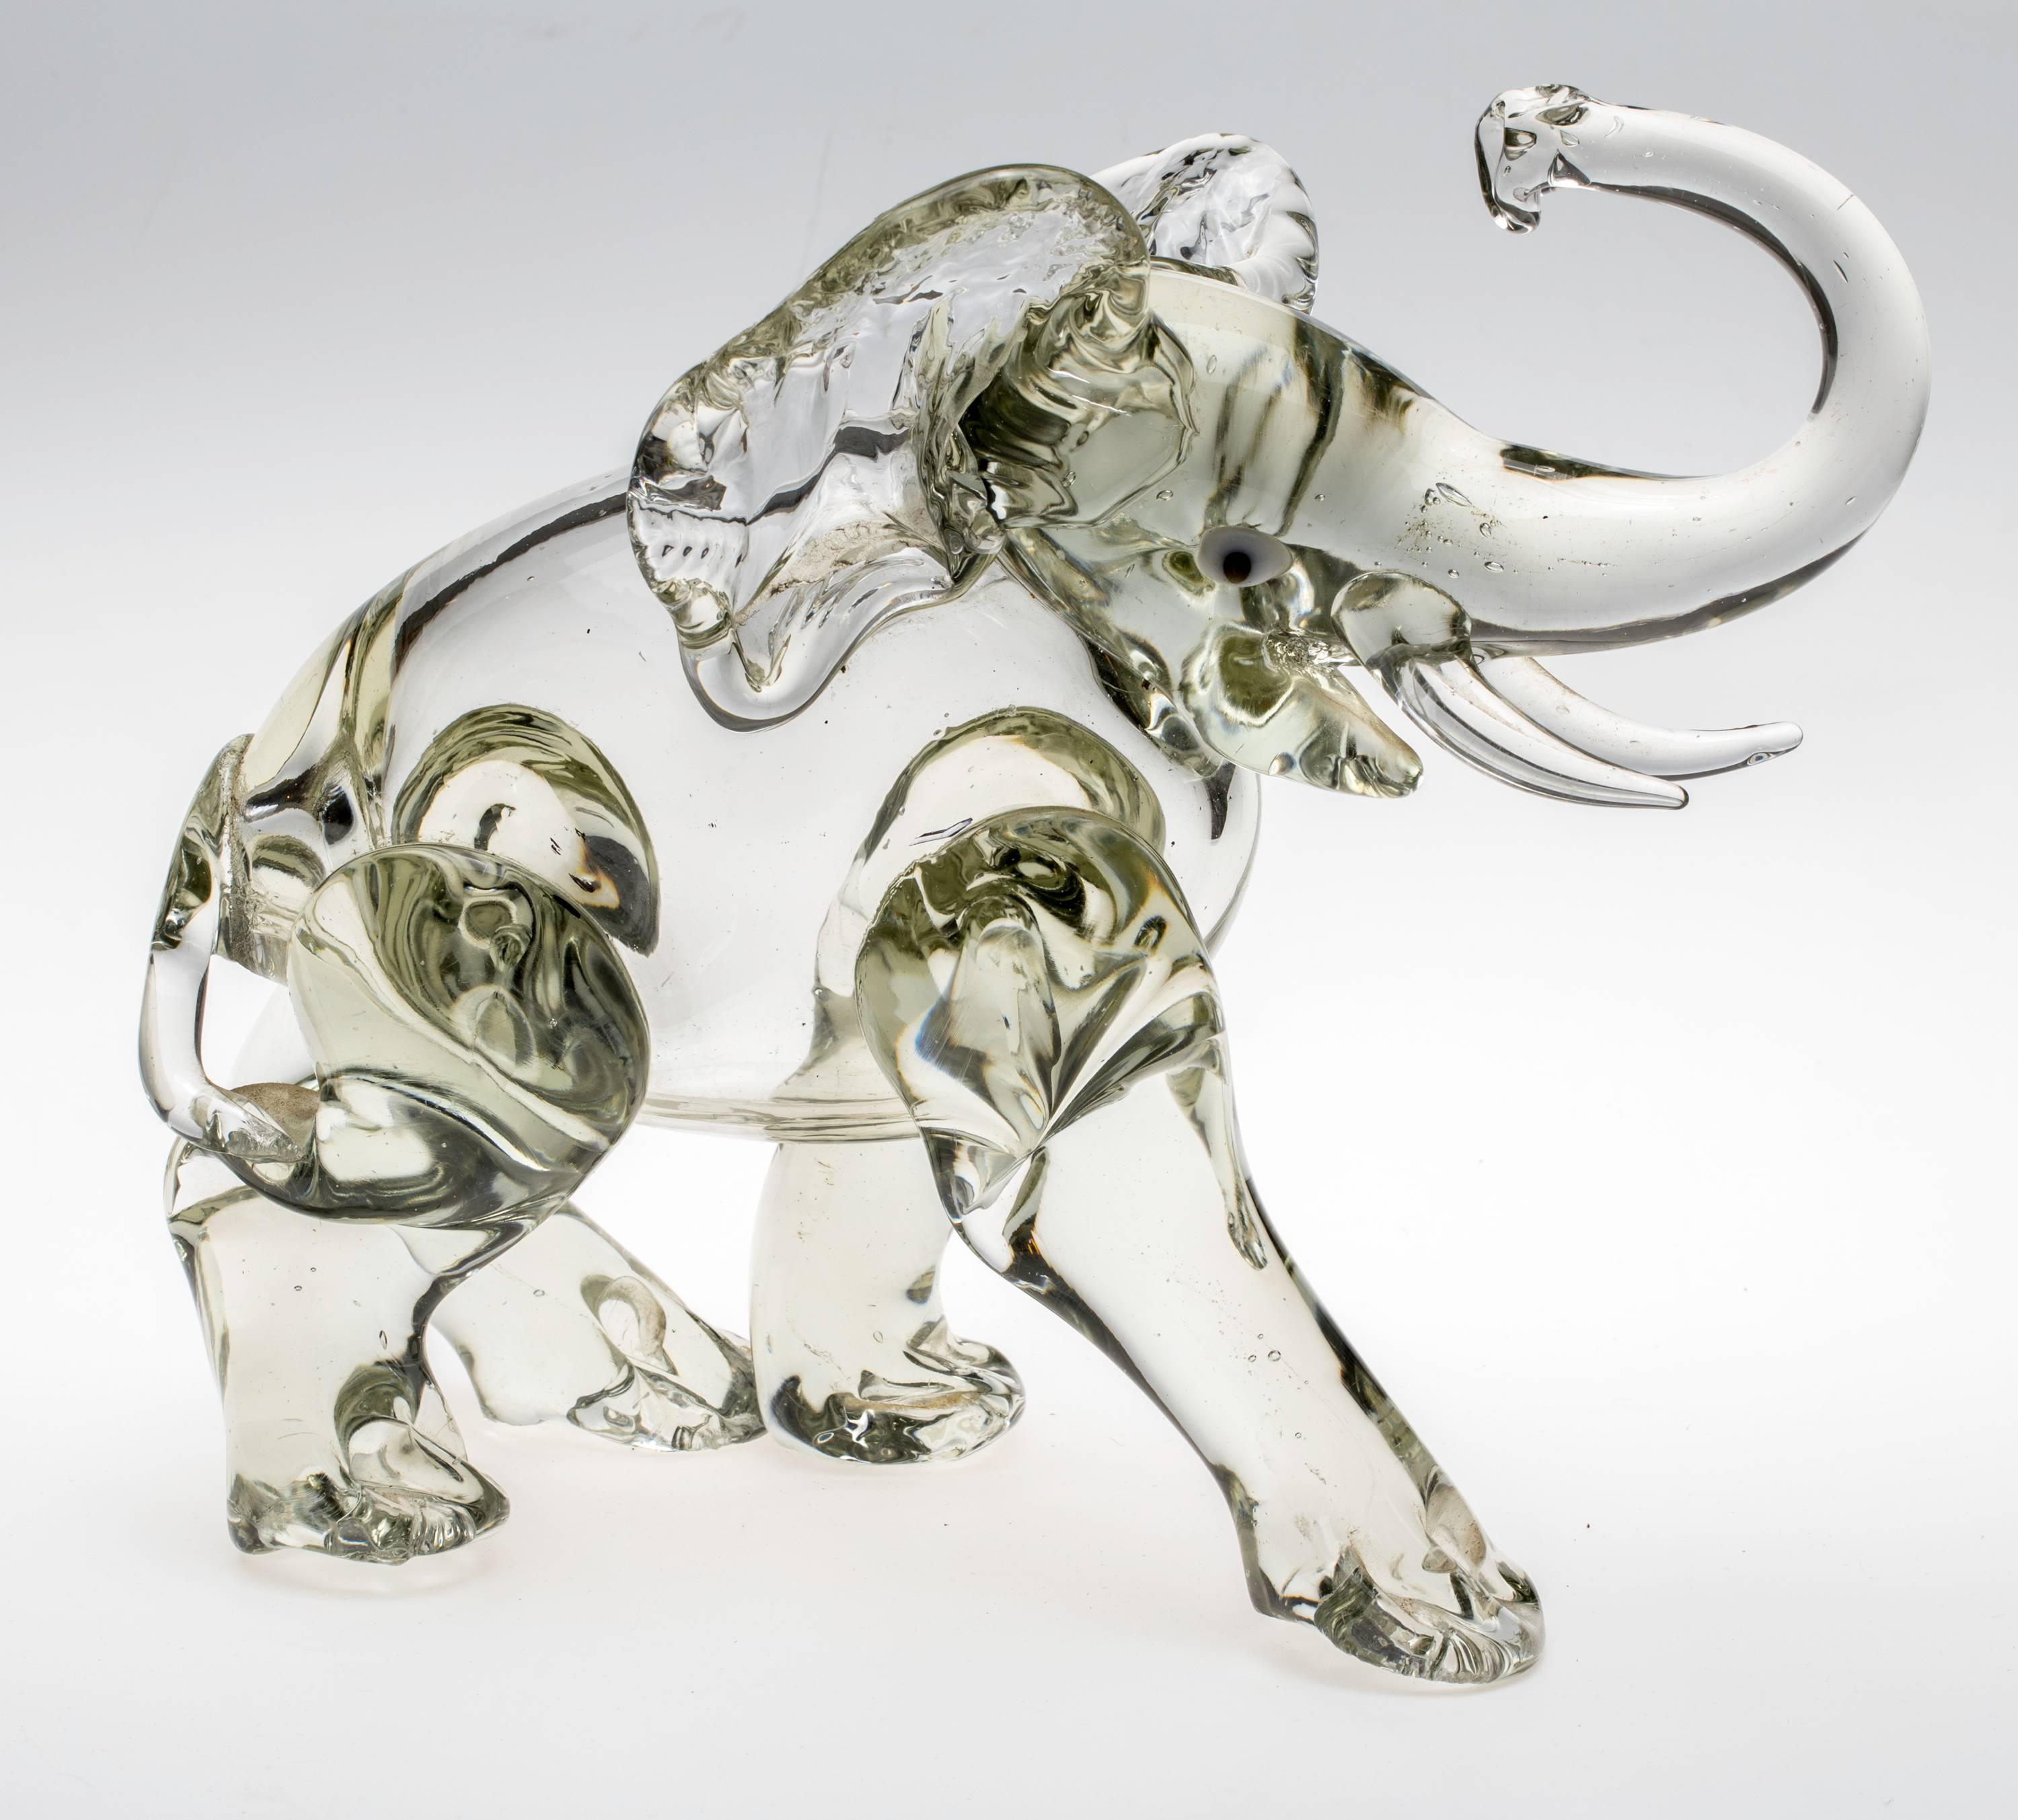 glass elephants for sale